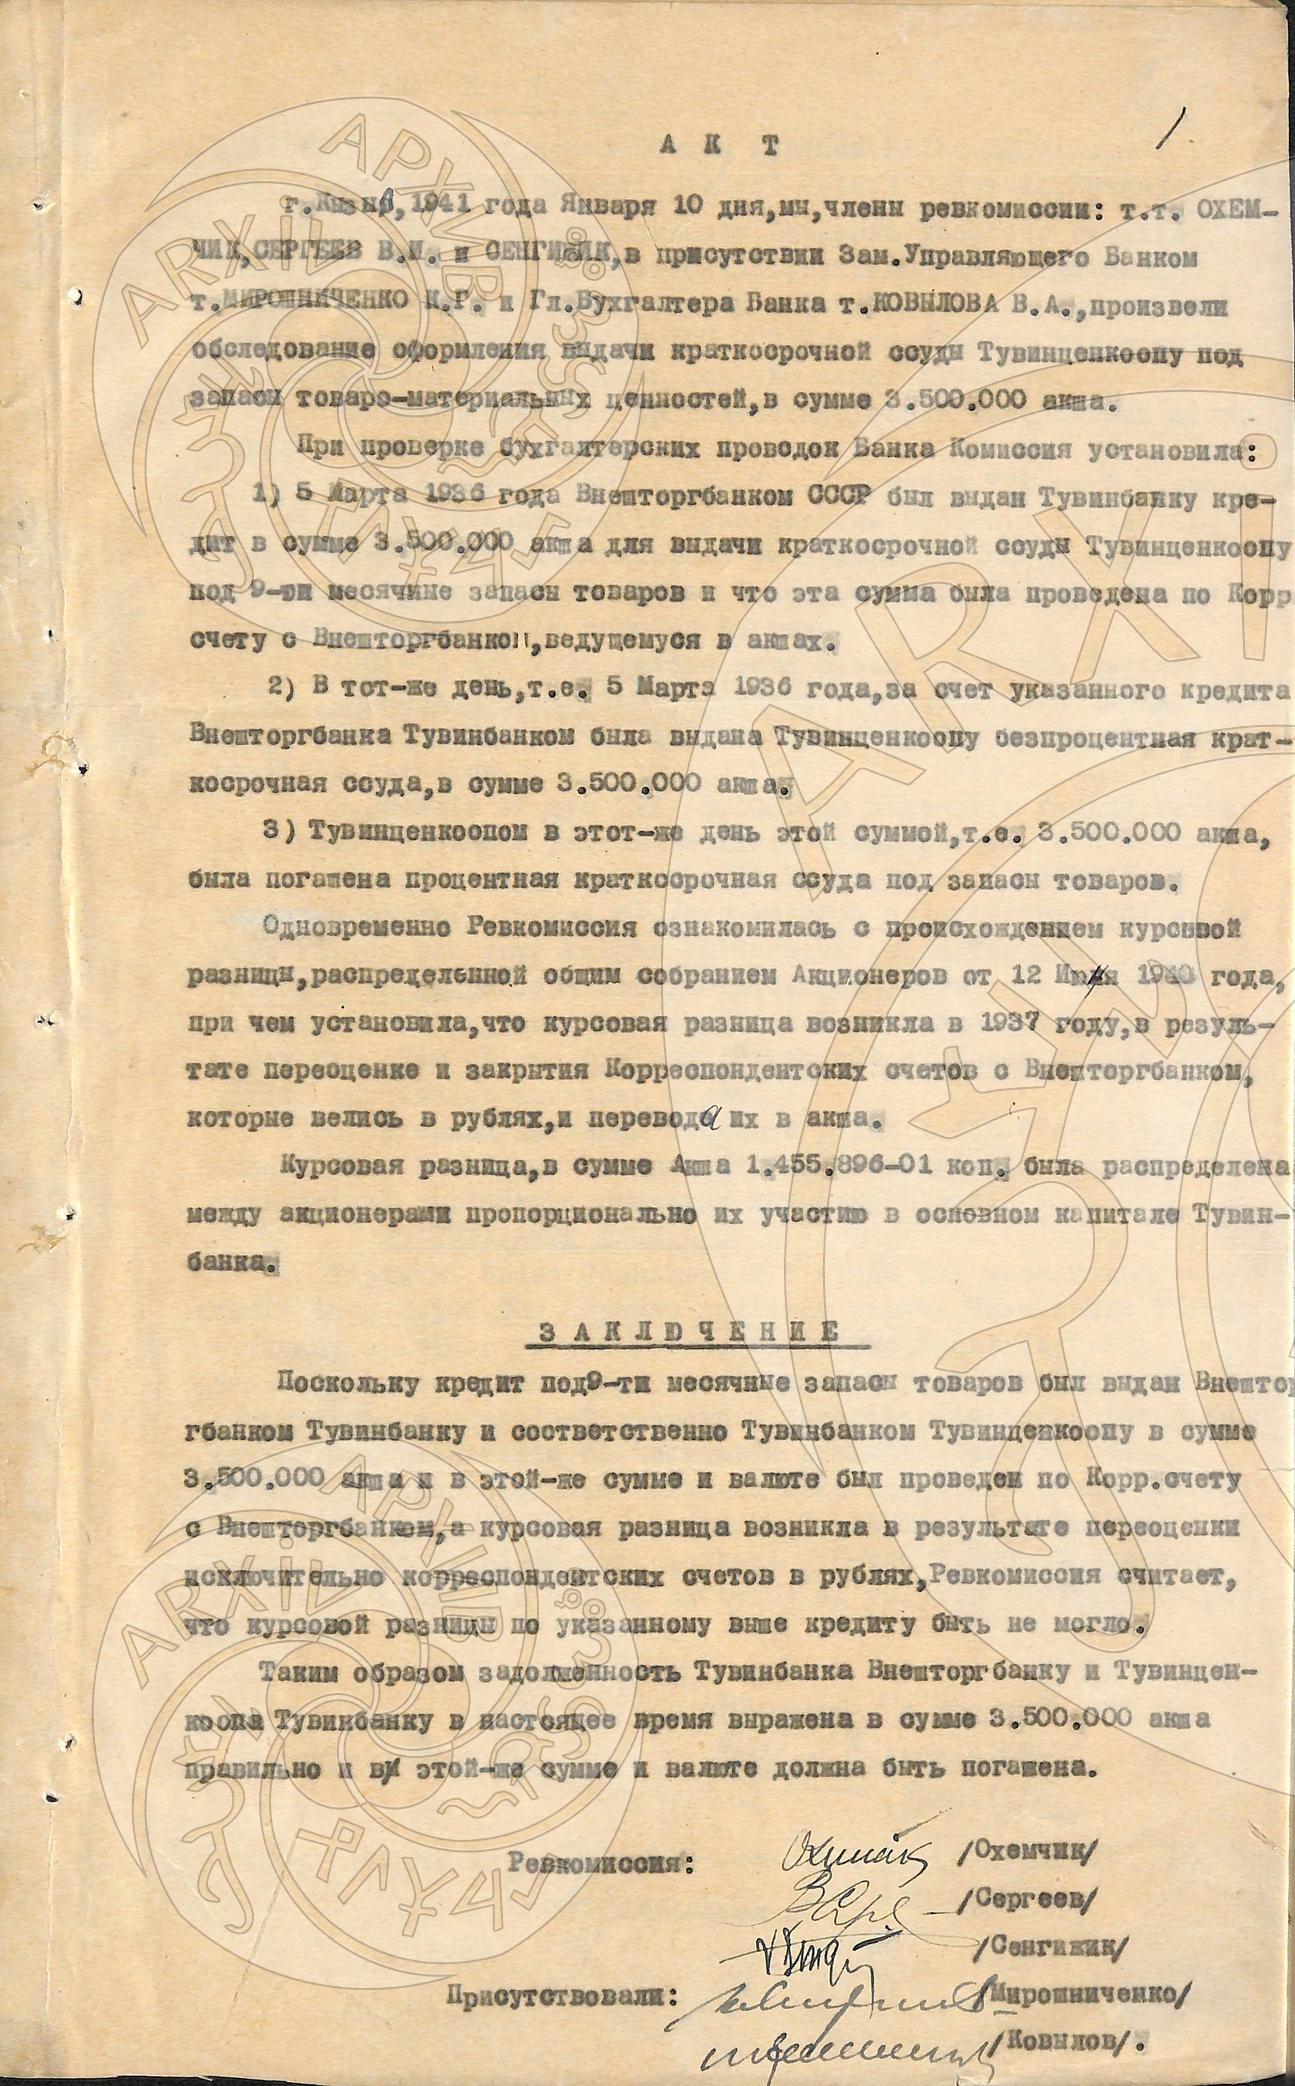 Акт обследования оформления выдачи краткосрочной ссуды Тувинценкоопу от 10.01.1941 г.